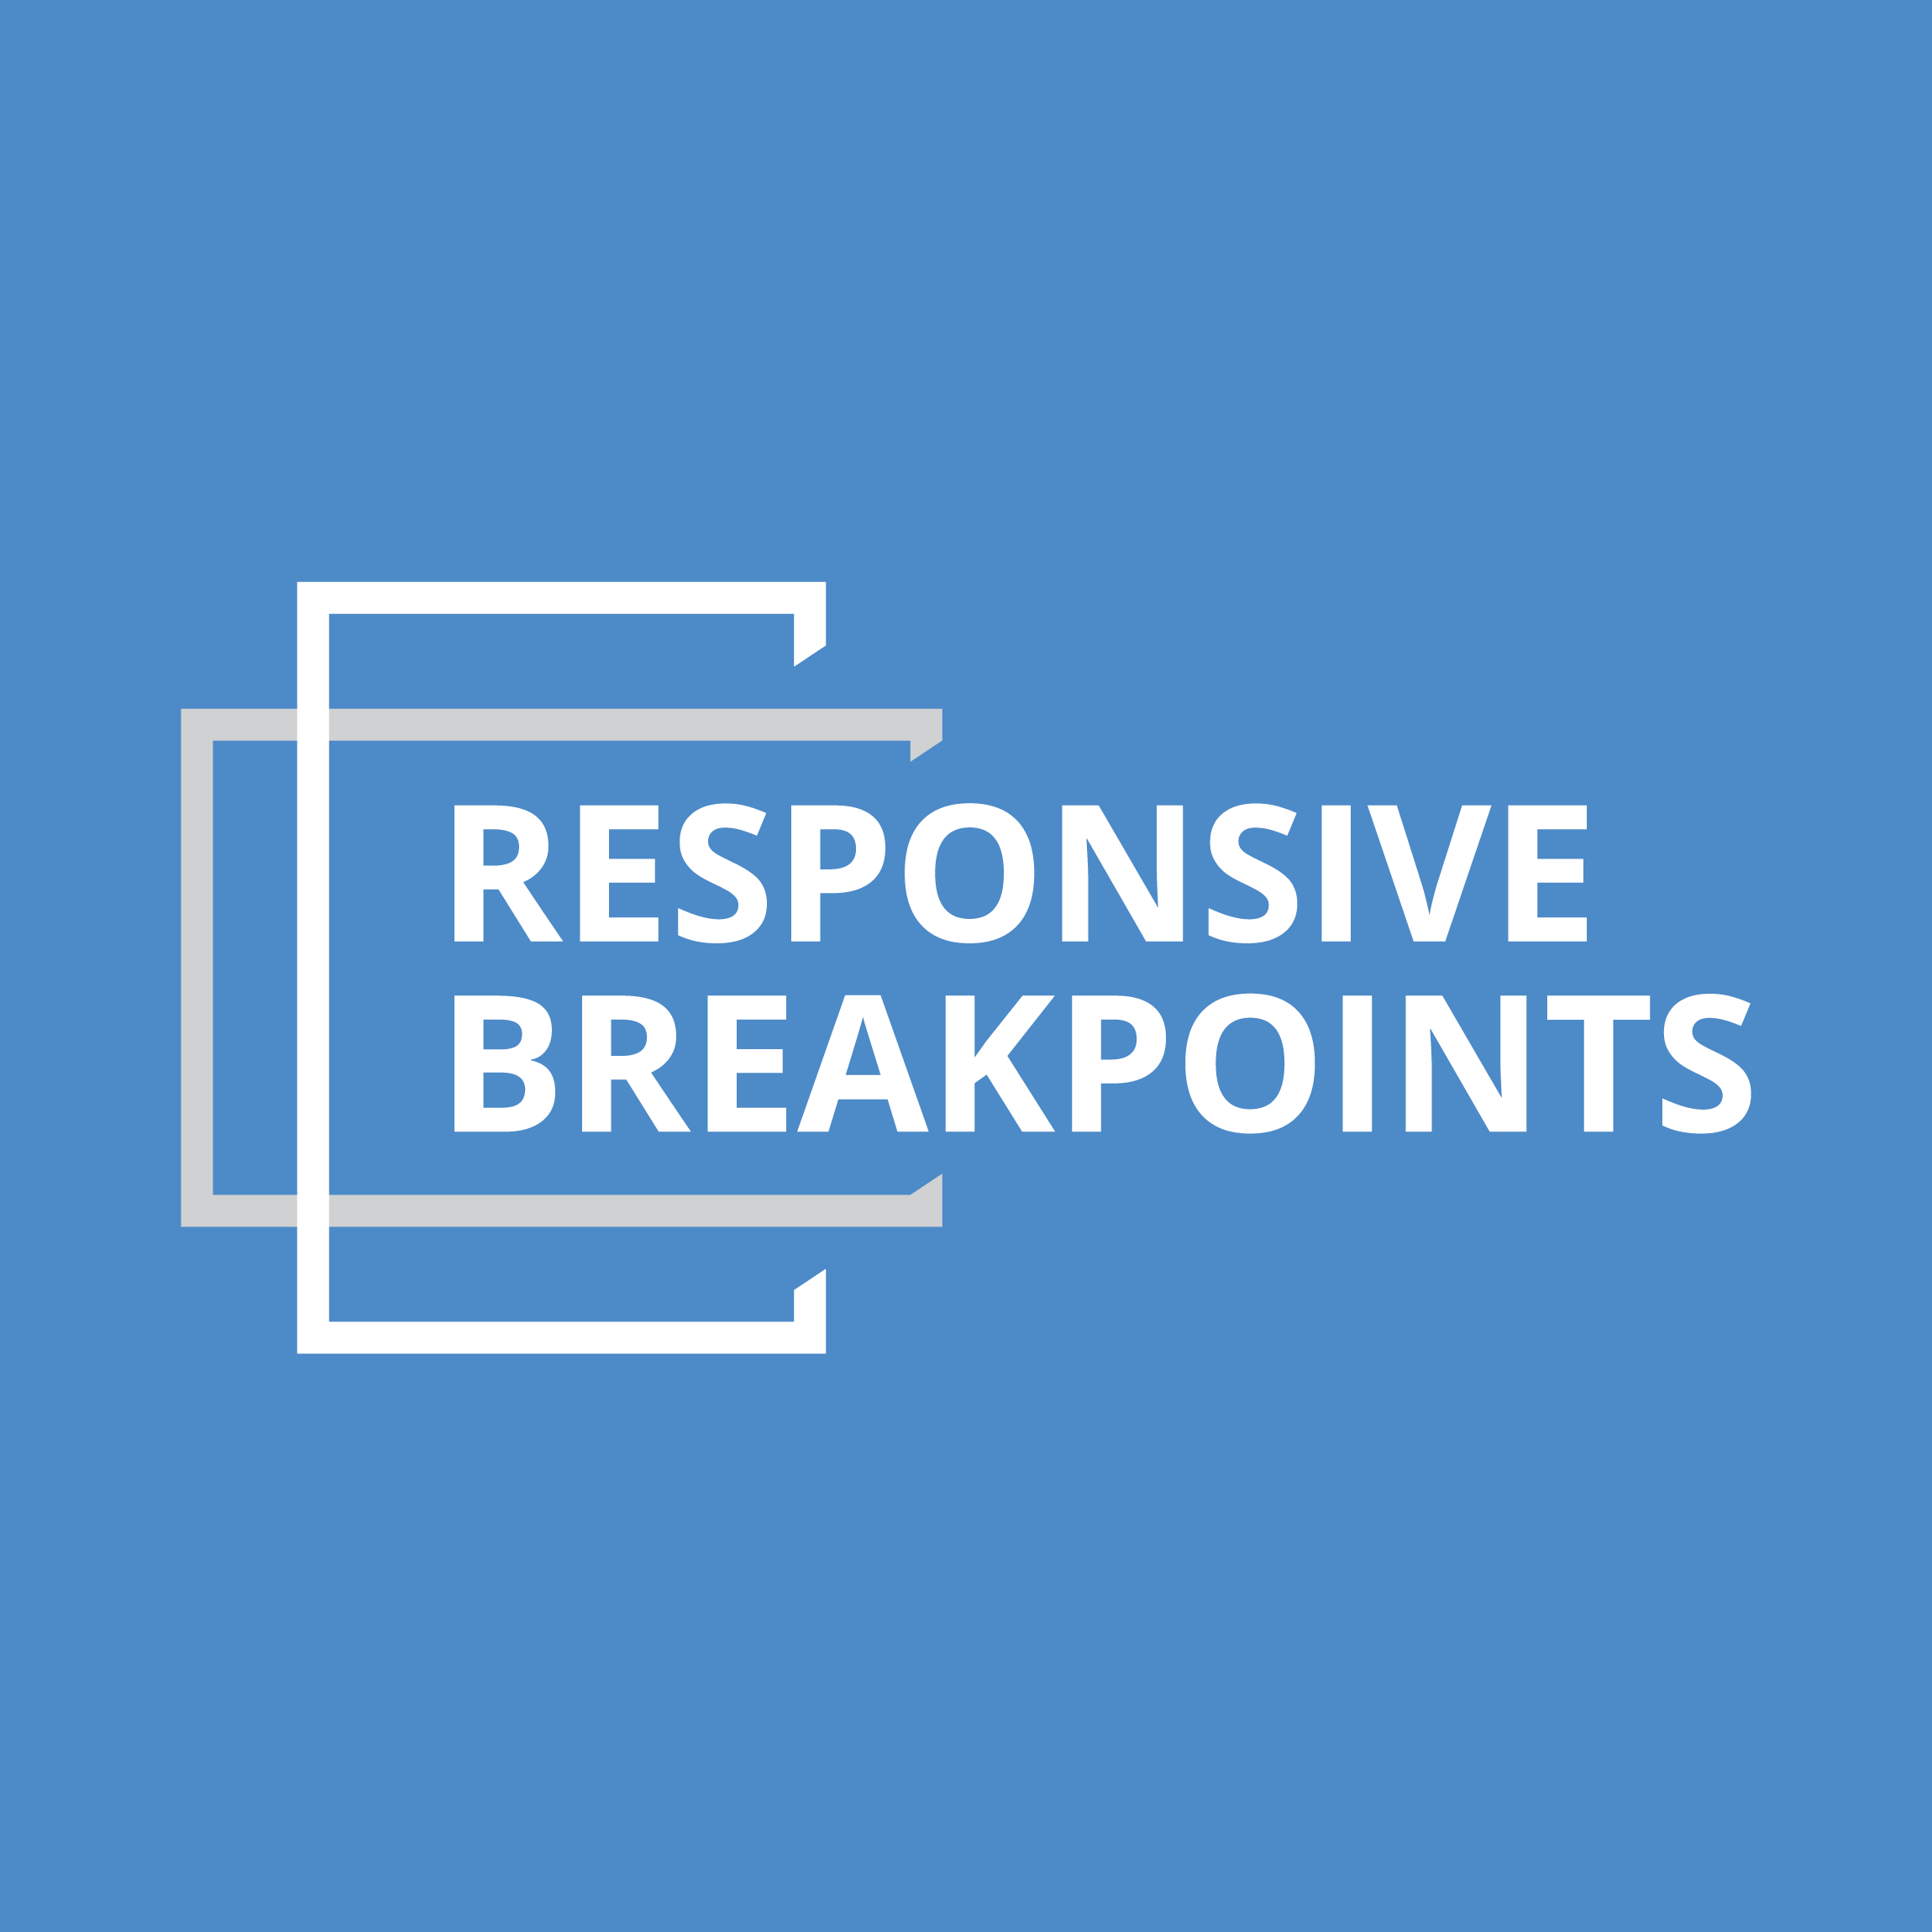 Responsive Breakpoints Generator